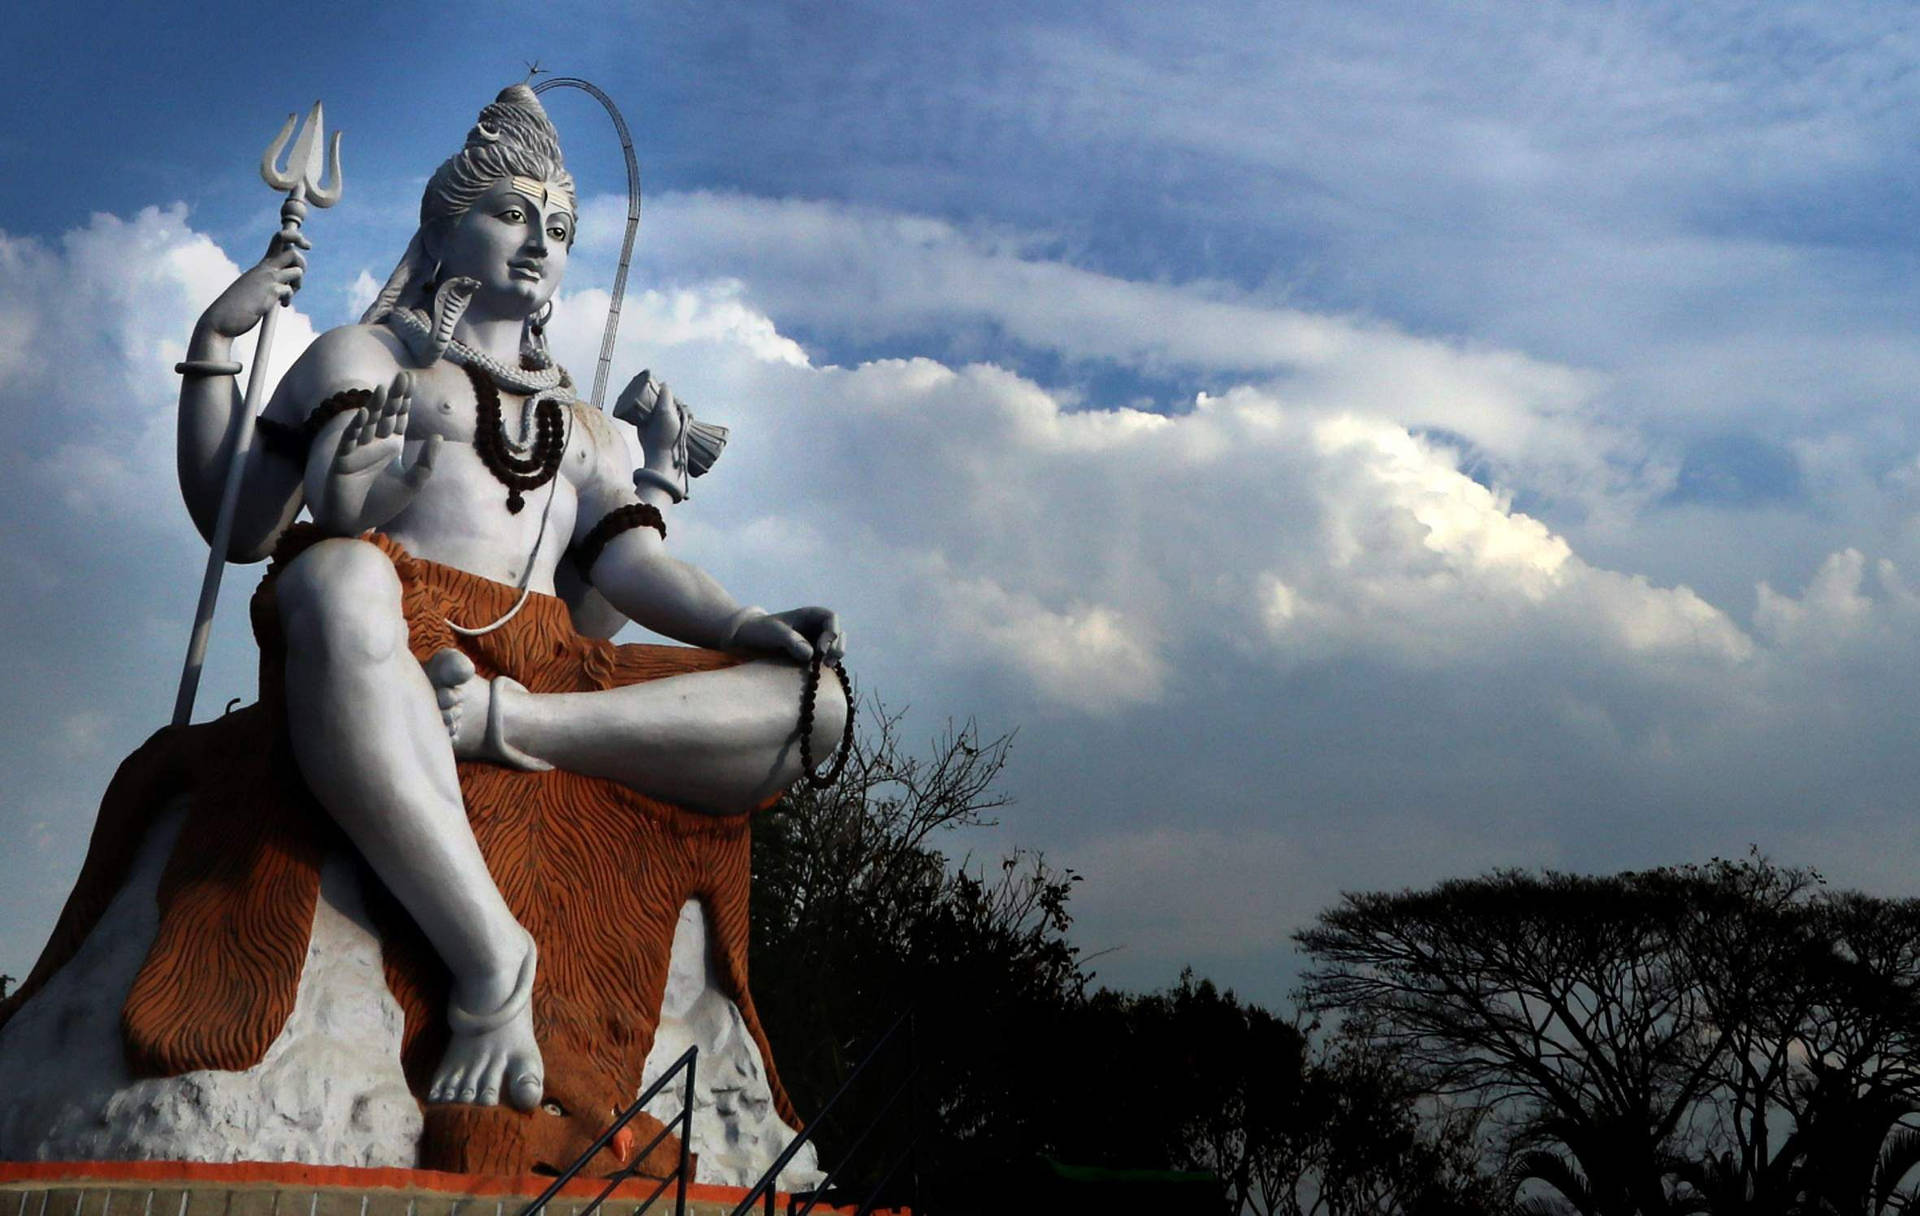 Shiva Statute One Leg Up